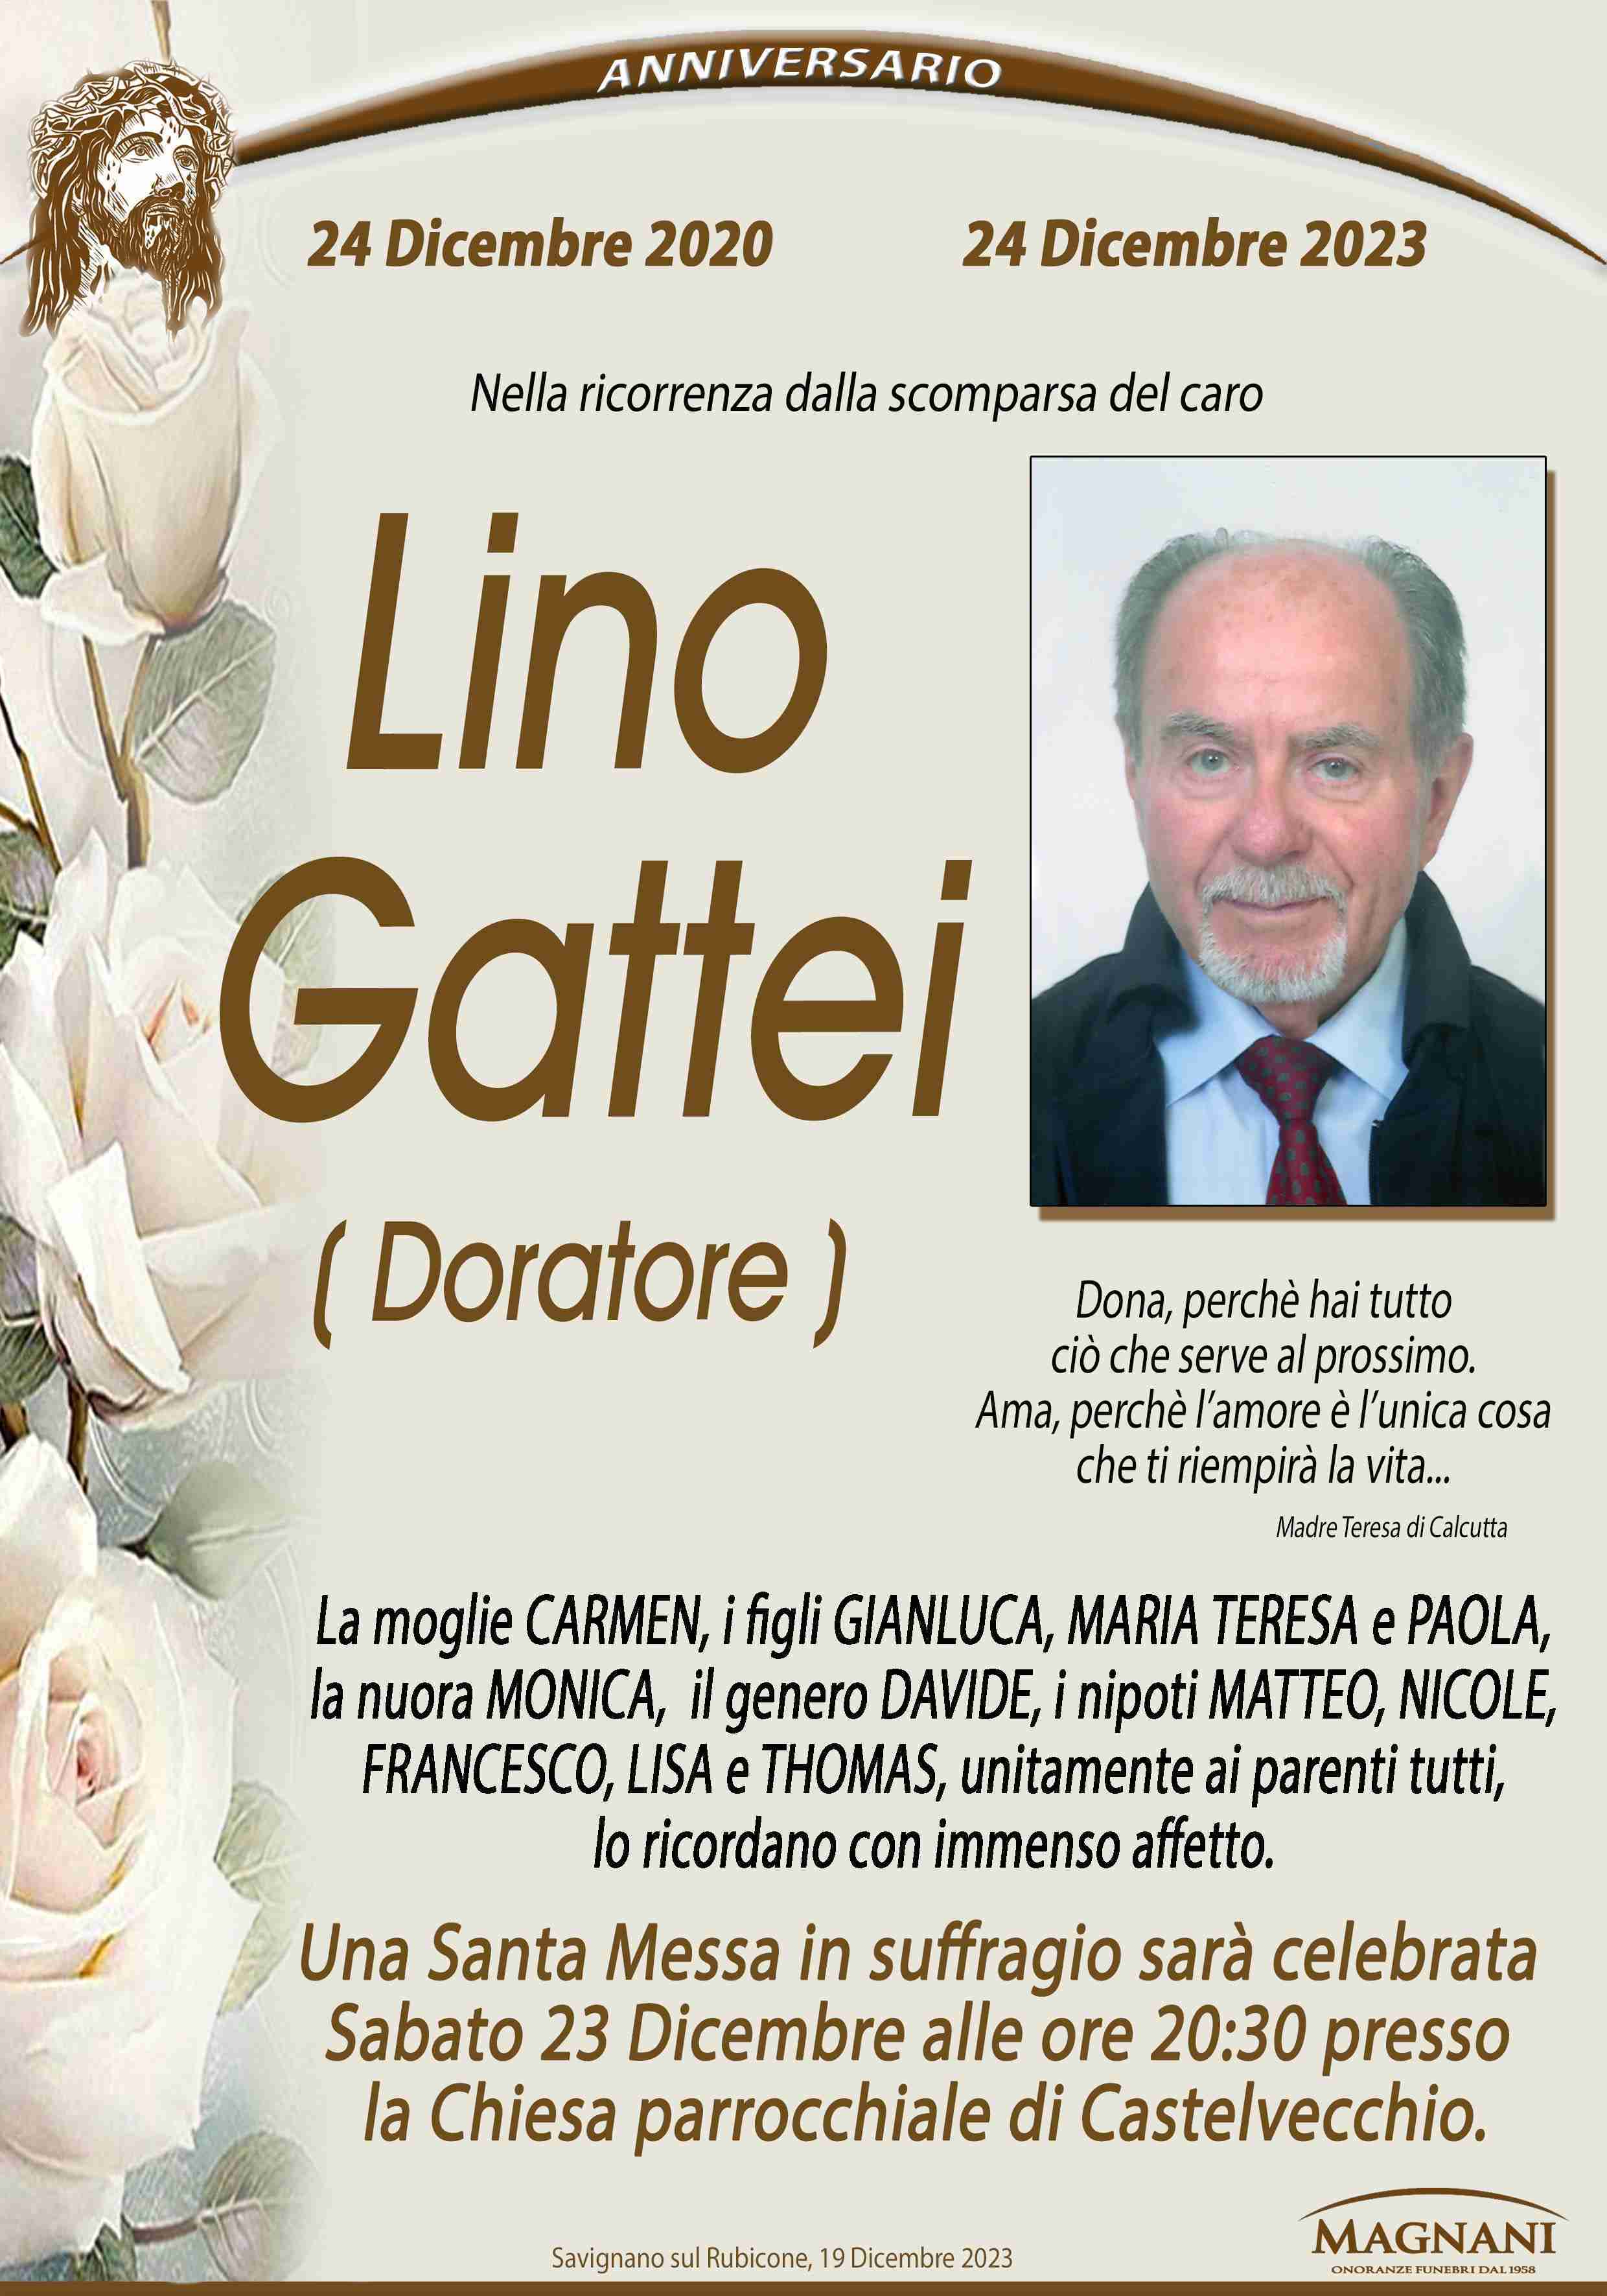 Lino Gattei